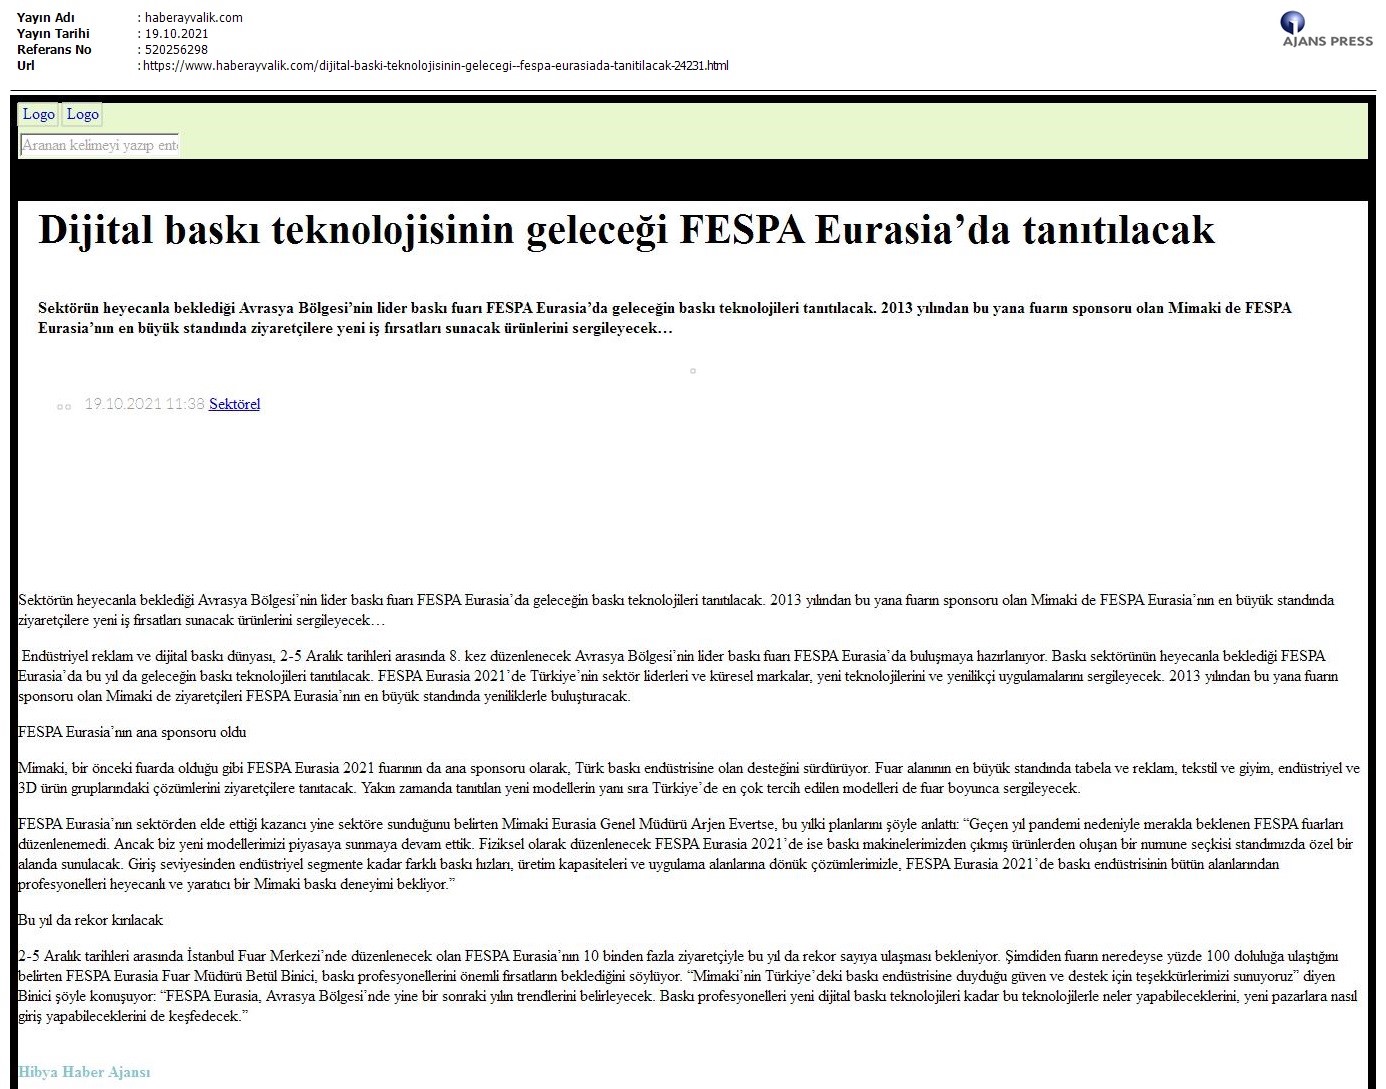 Dijital baskı teknolojisinin geleceği FESPA Eurasia'da tanıtılacak